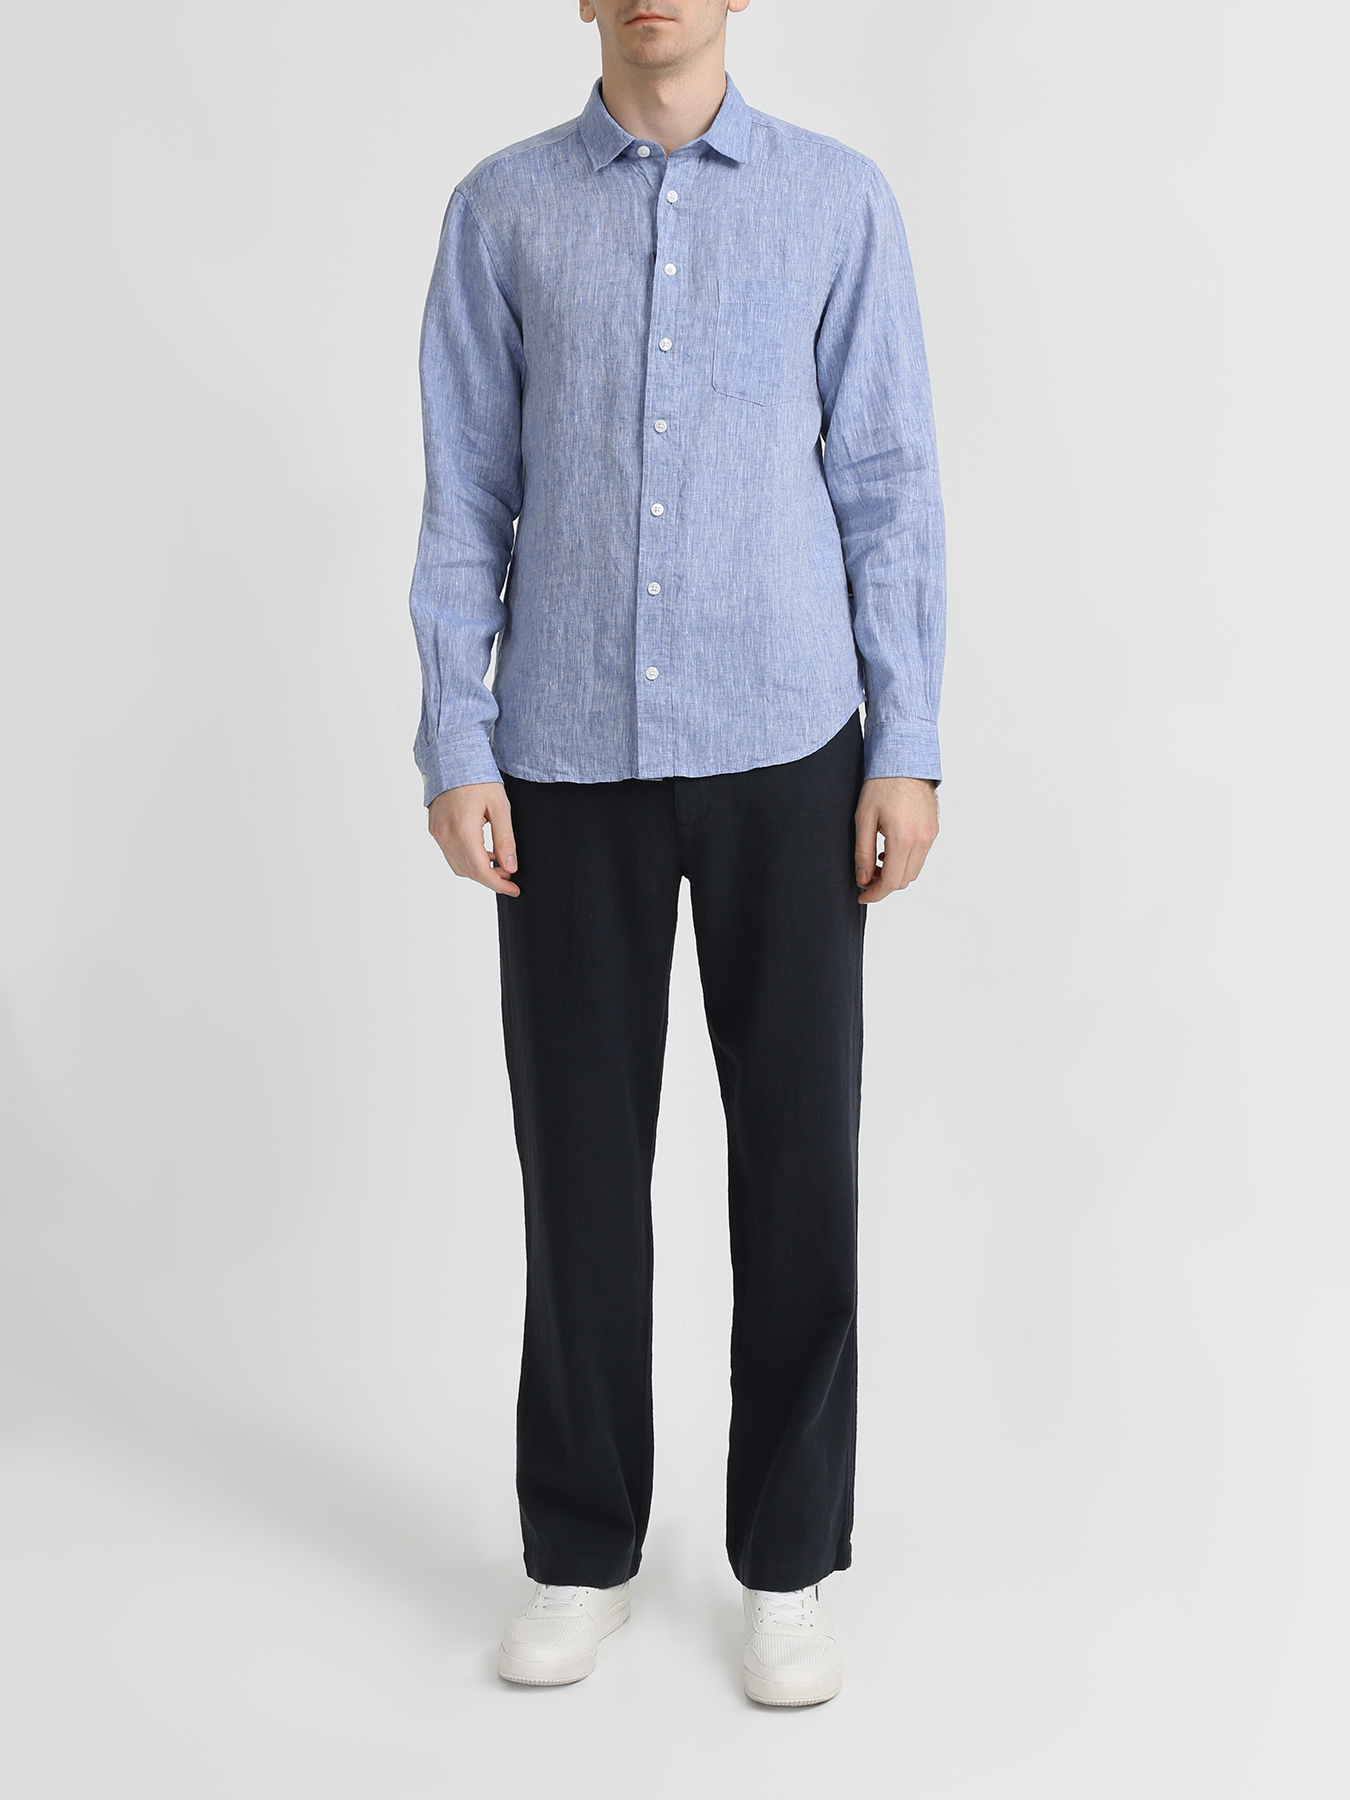 Alessandro Manzoni Jeans Льняная рубашка 328109-025 Фото 1